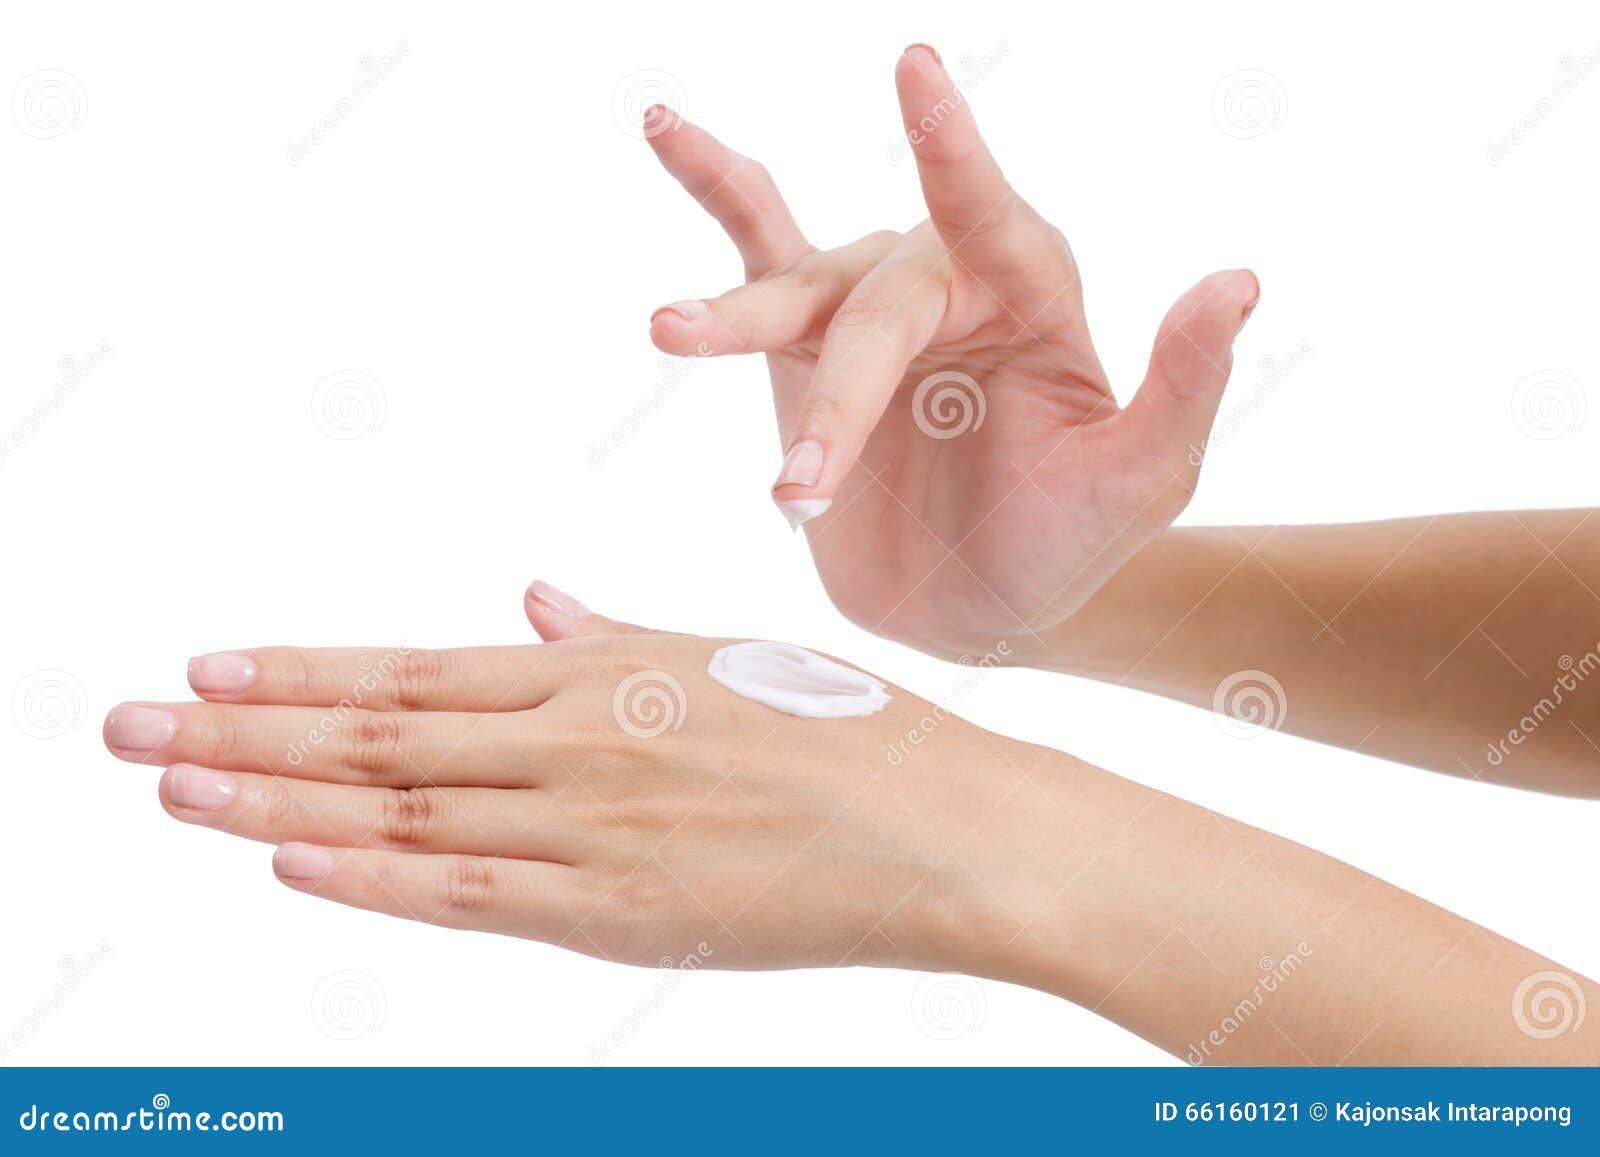 На руках можно применять. Крем для рук на белом фоне. Прозрачный крем на руках. Мультяшка наносит крем на руку. Азиатские руки.